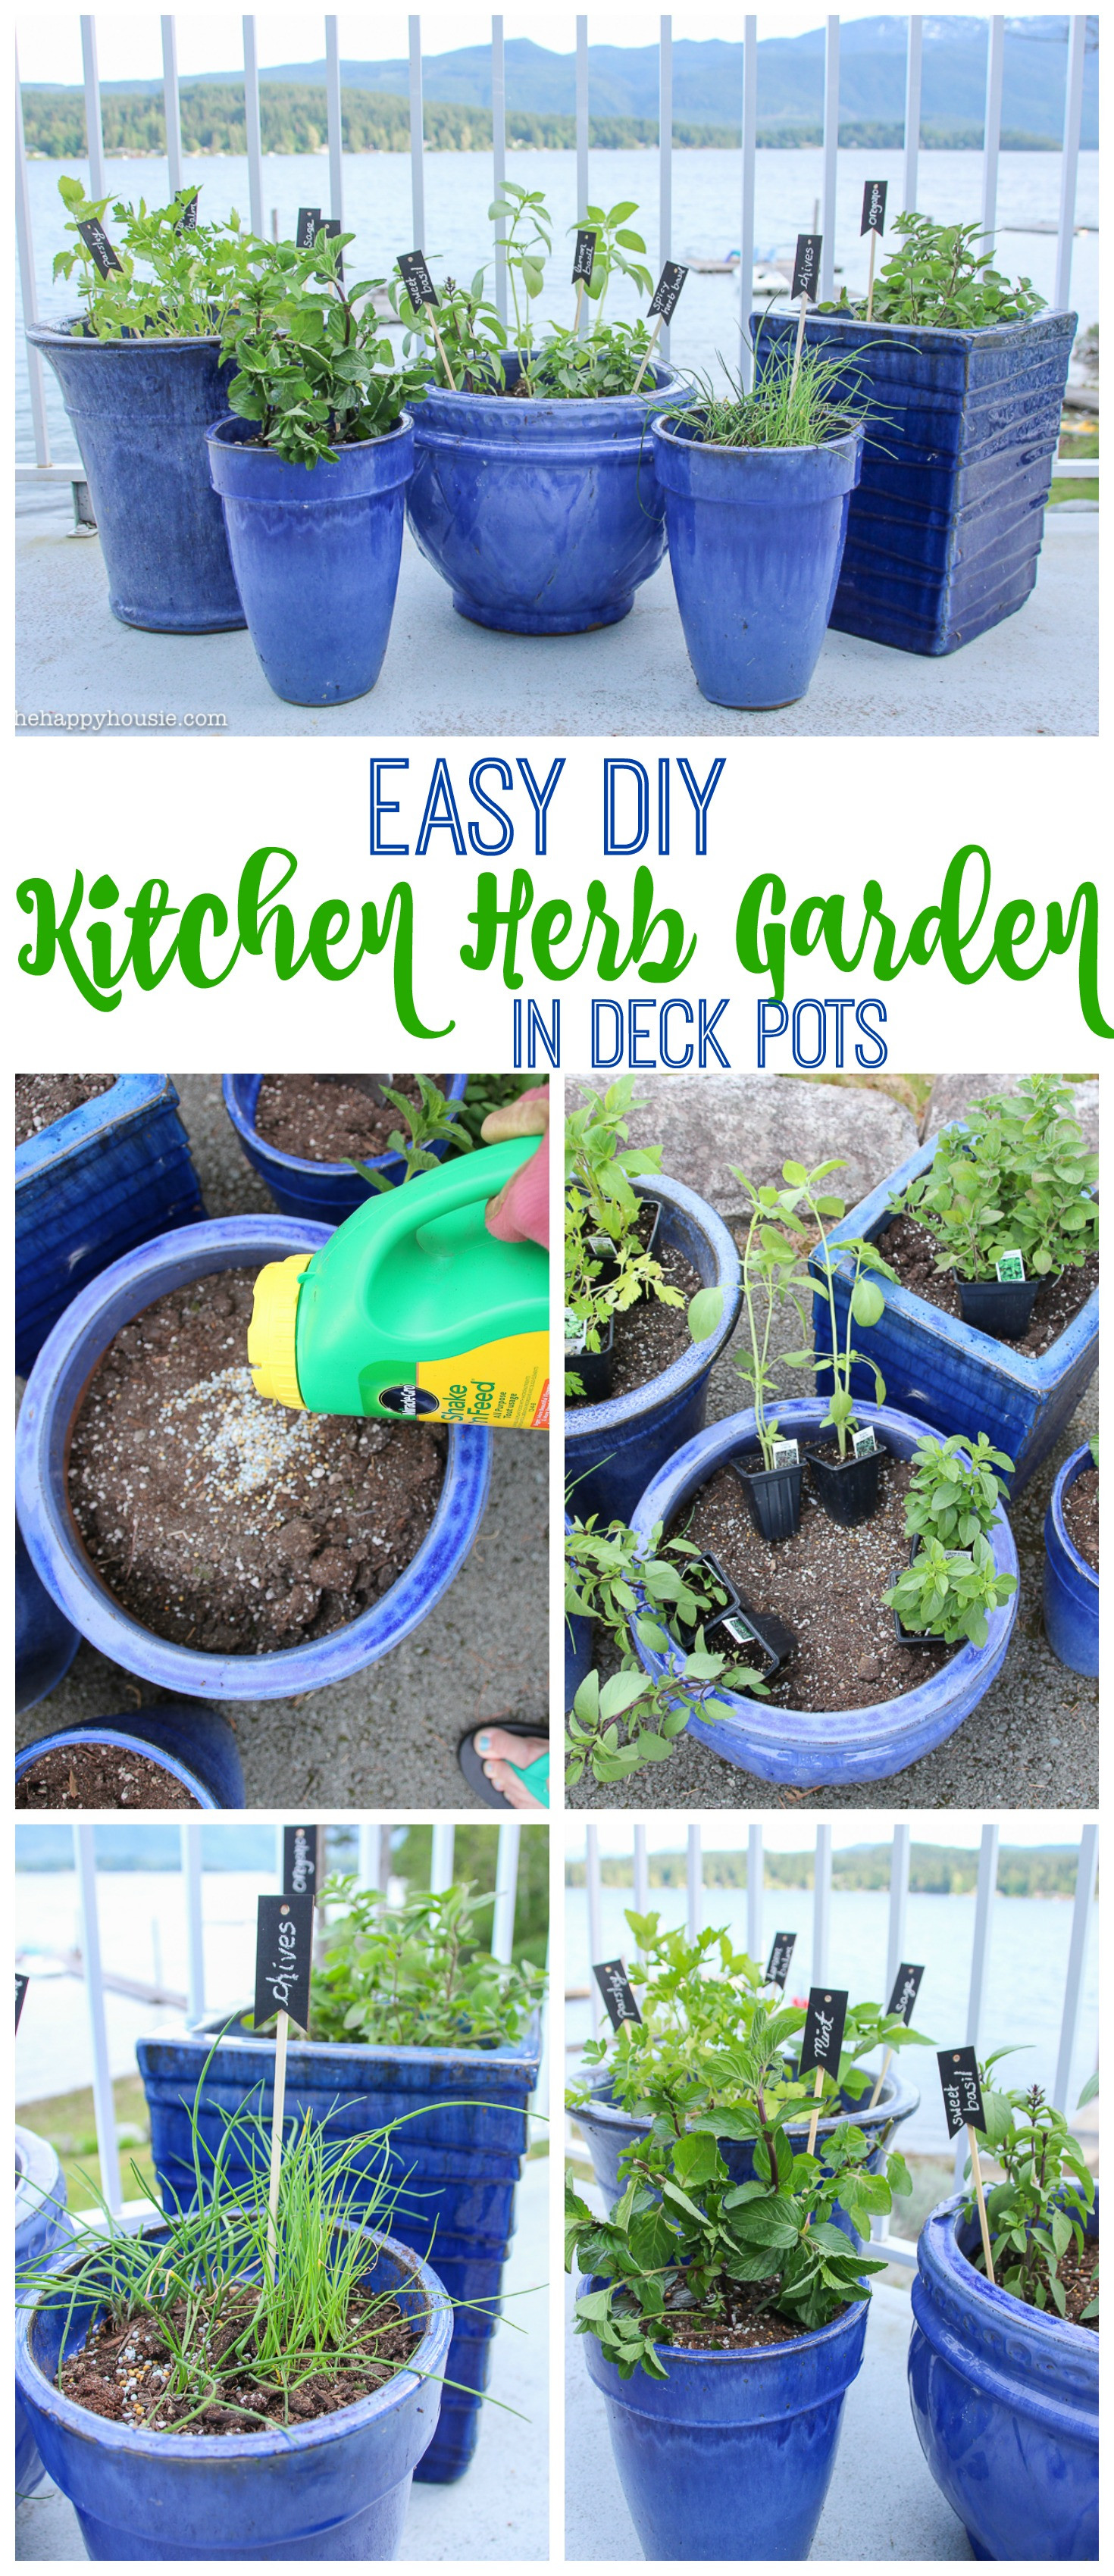 Best ideas about DIY Outdoor Herb Garden
. Save or Pin Easy DIY Kitchen Herb Garden in Deck Pots Now.